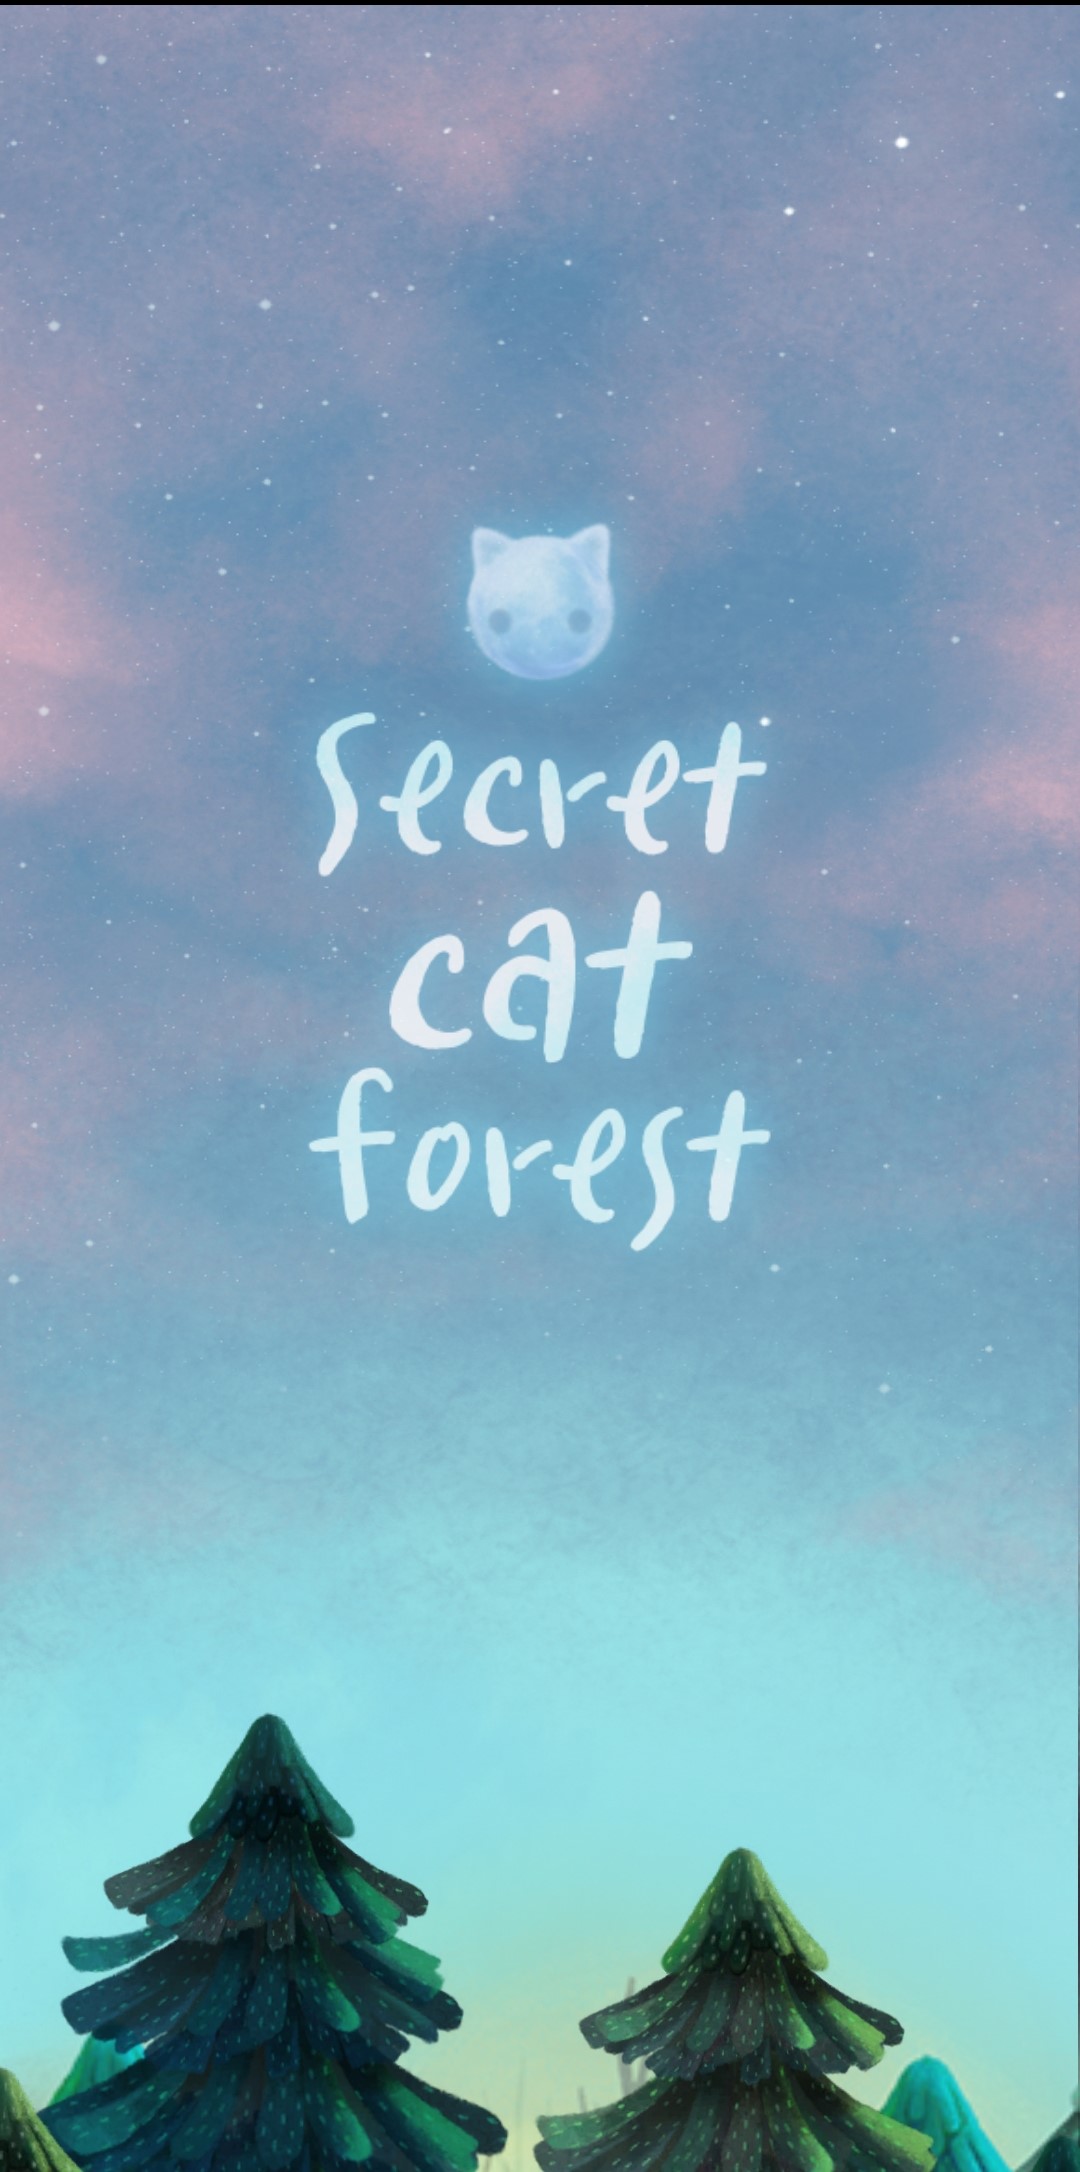 Secret Cat Forest